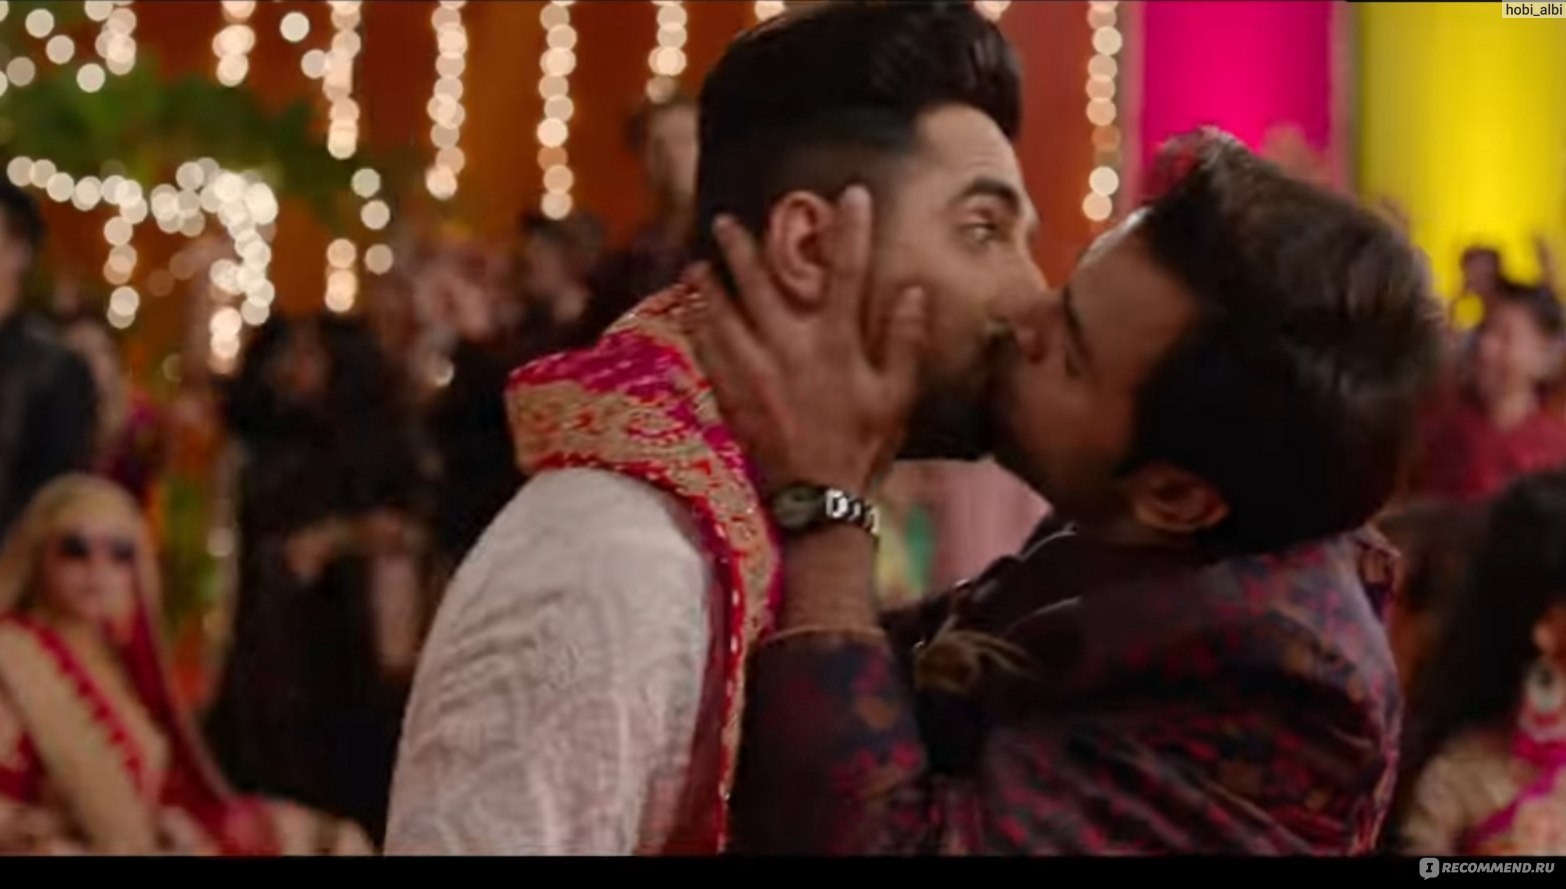 Жениться нужно осторожно/ Shubh Mangal Zyada Saavdhan (2020, фильм) -  «Болливудский квир или coming-out по-индийски» | отзывы